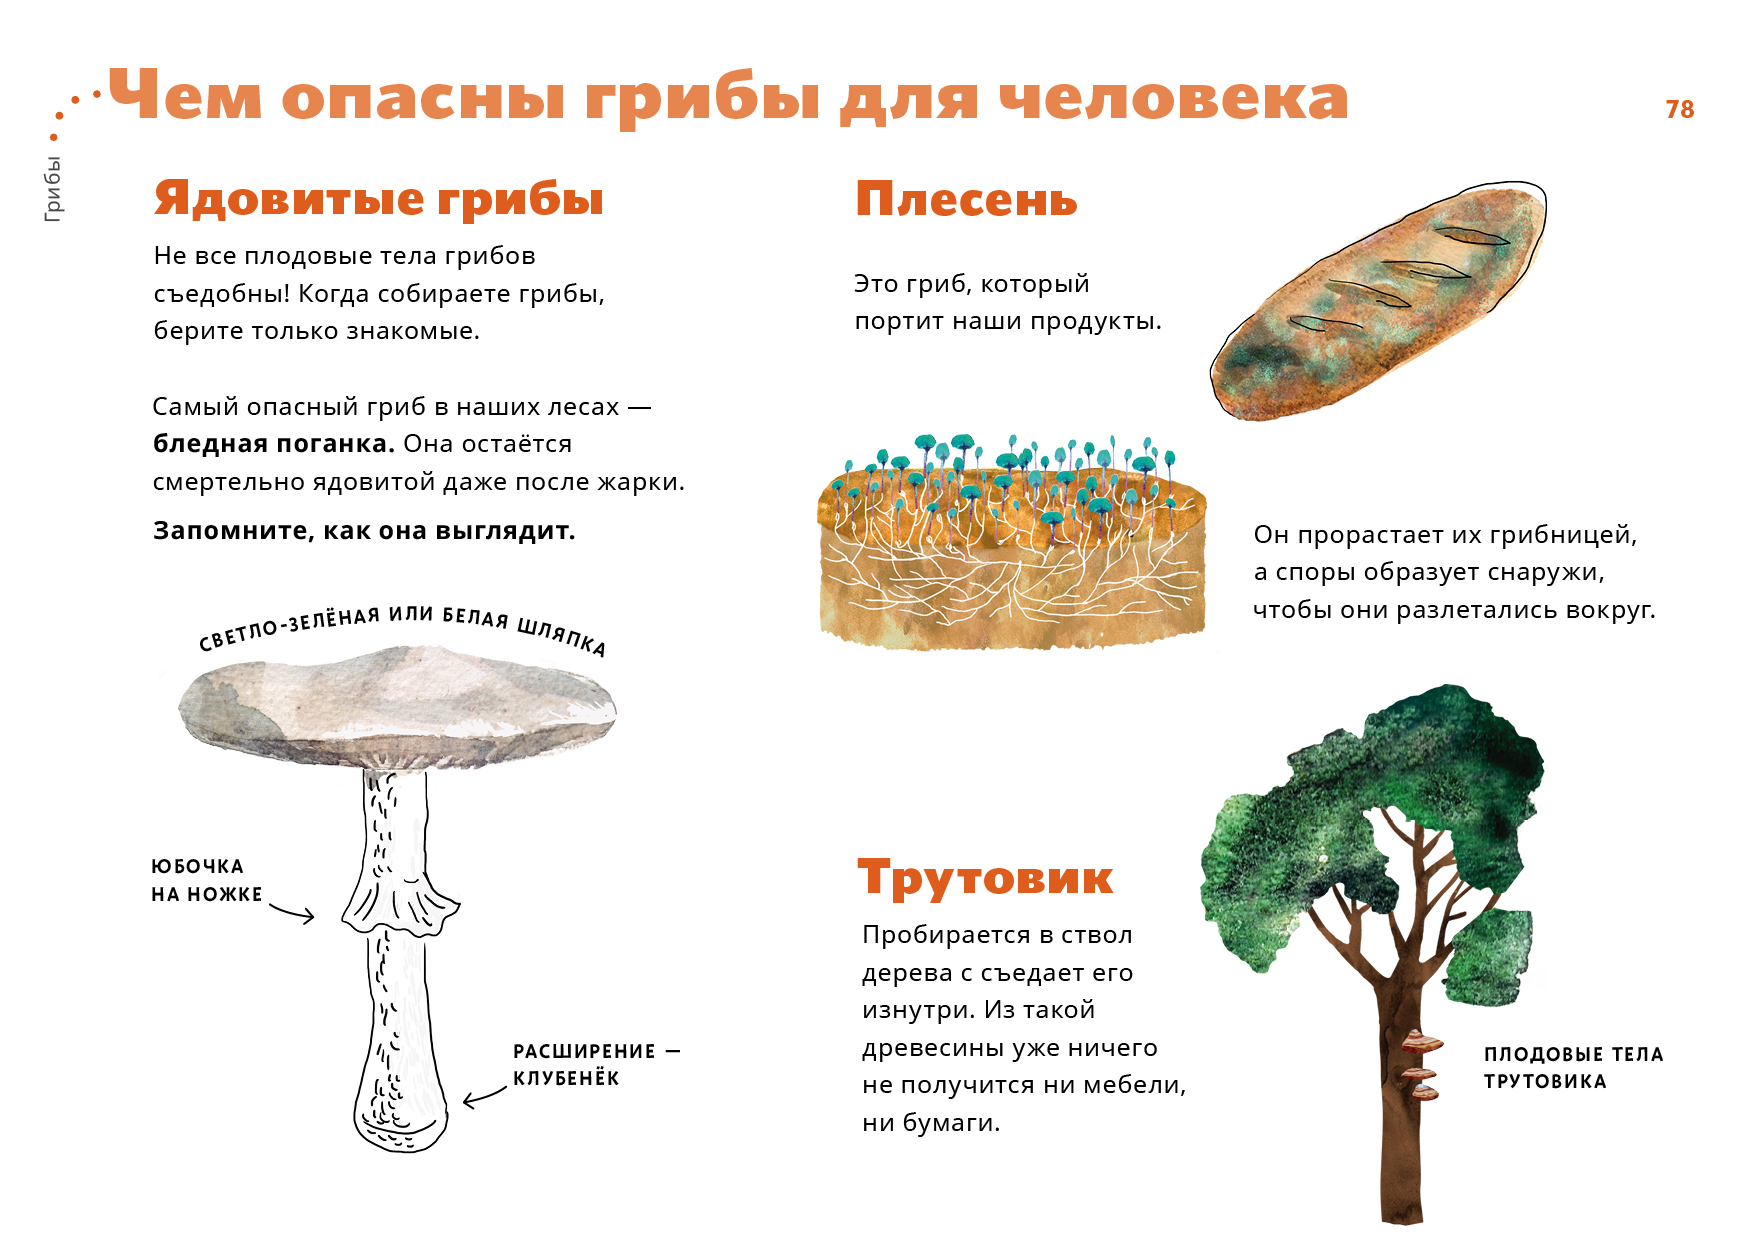 Ядовитые грибы и их влияние на организм человека